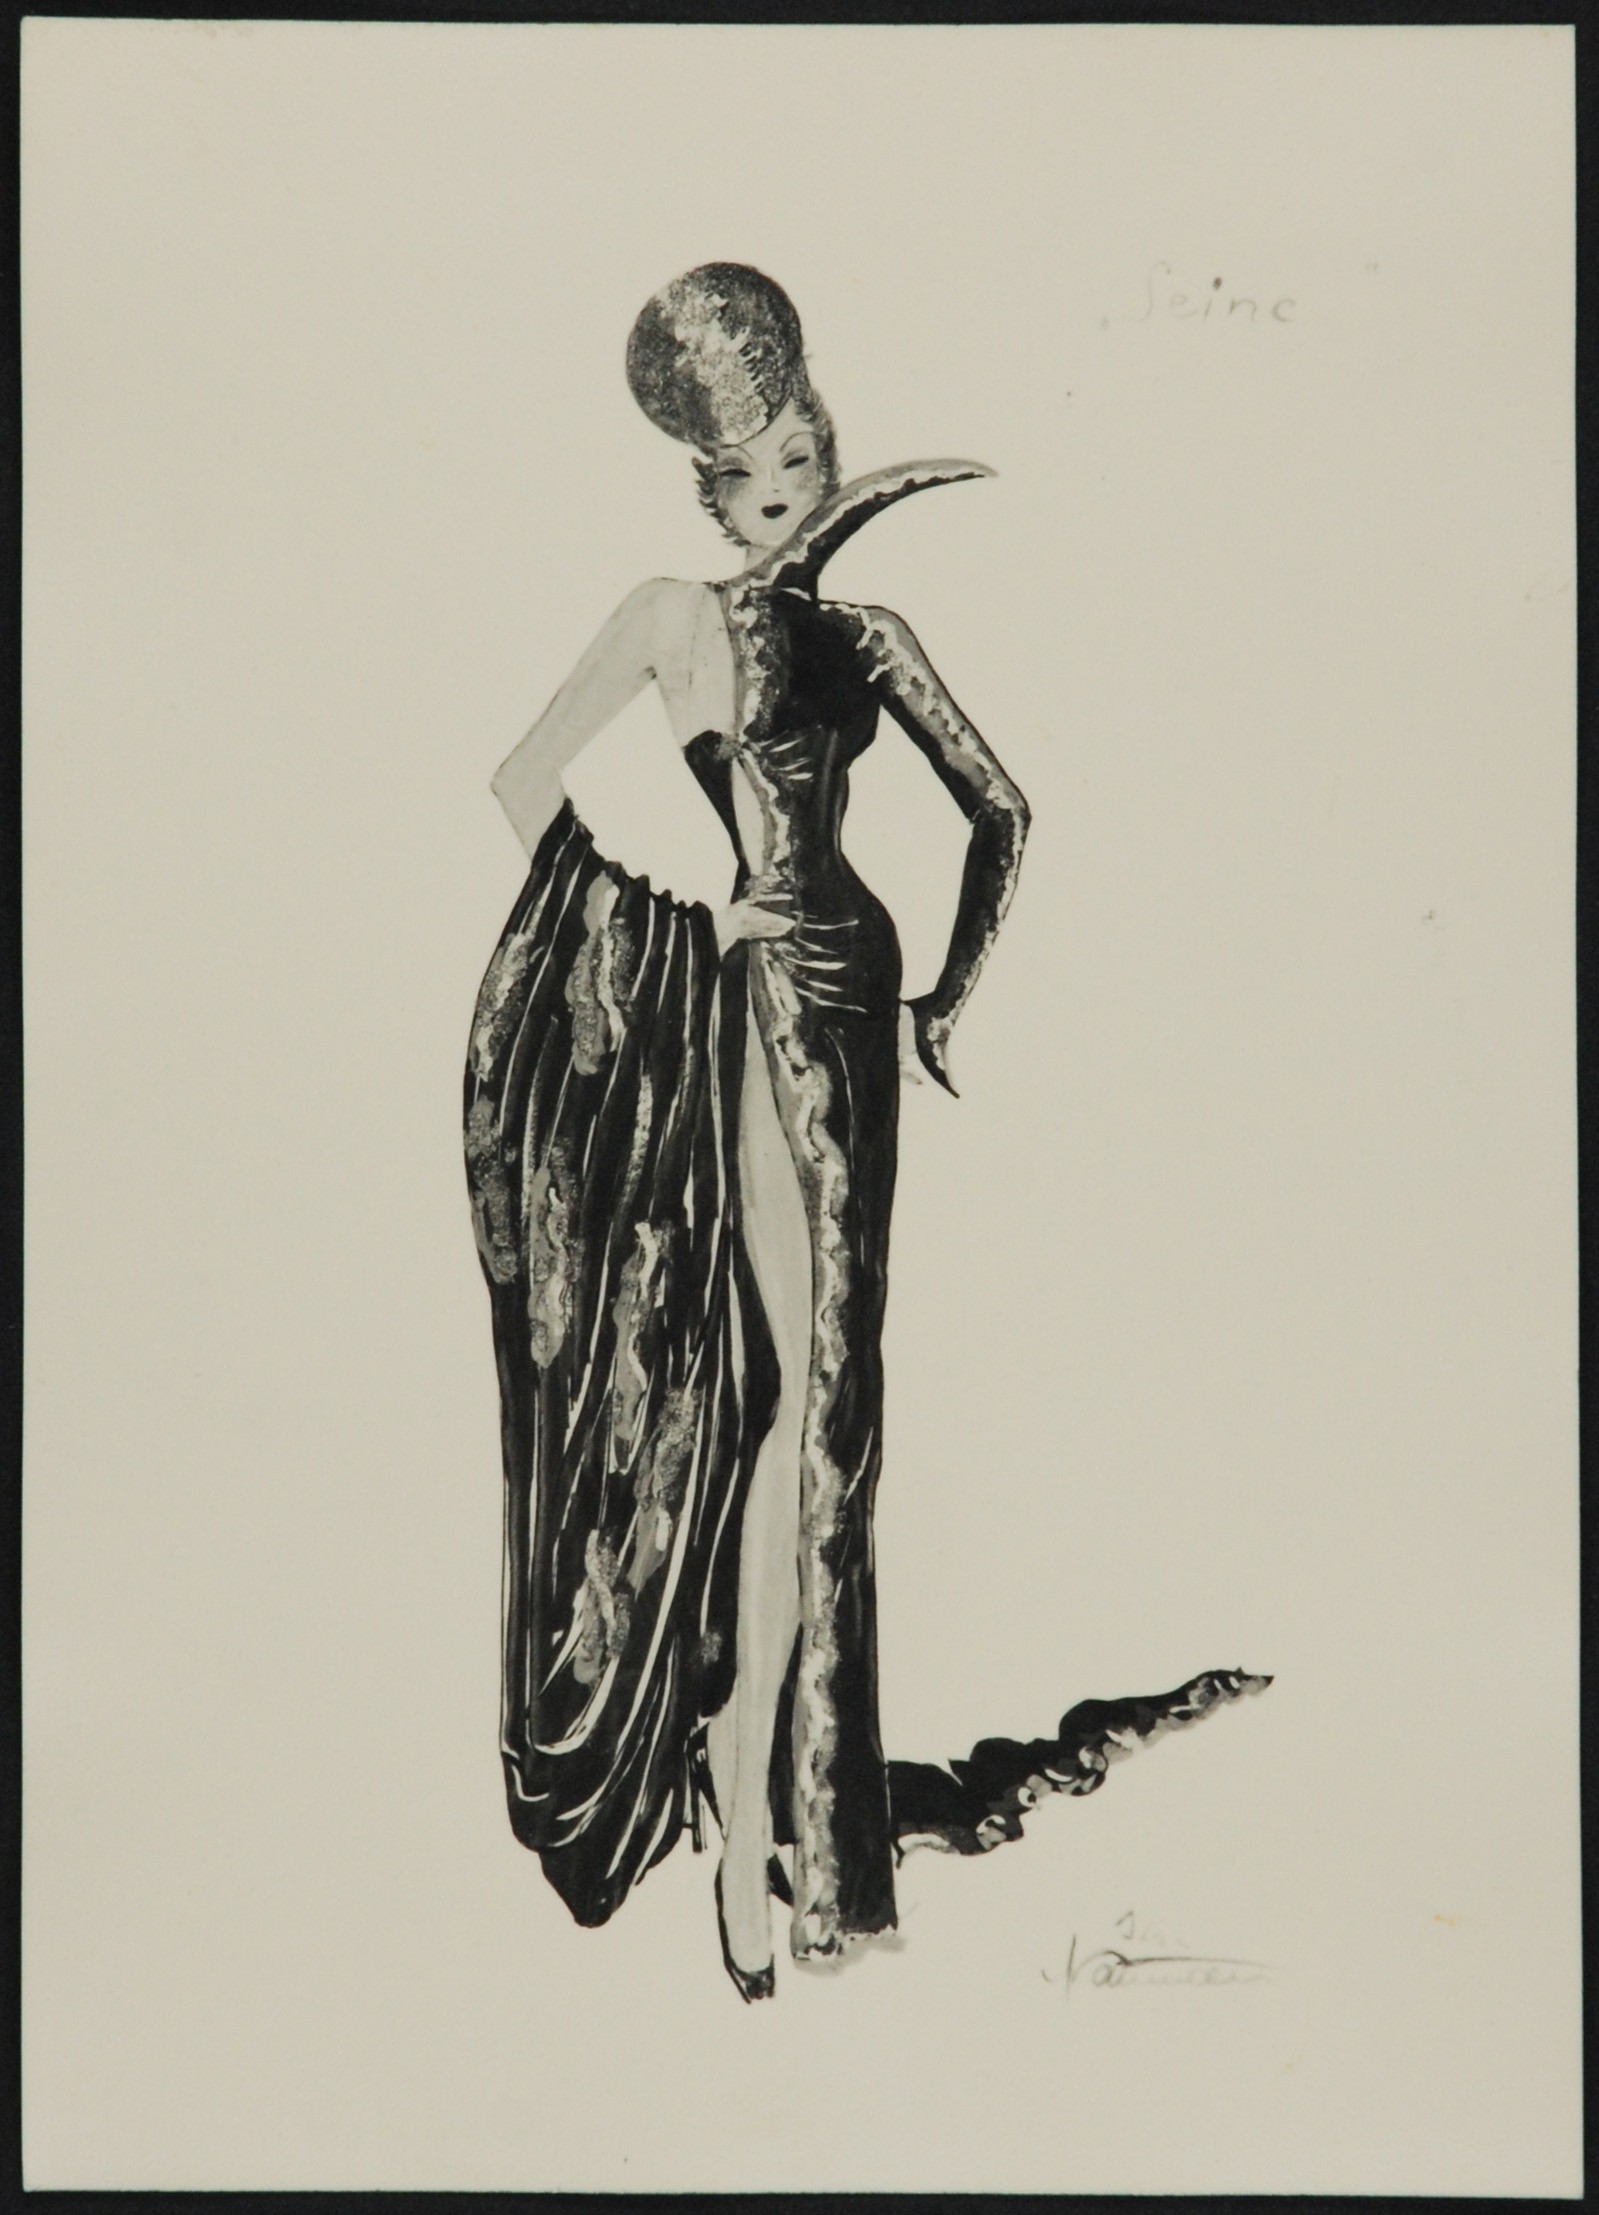 Skizze einer Frau in einem eleganten schwarzen Abendkleid